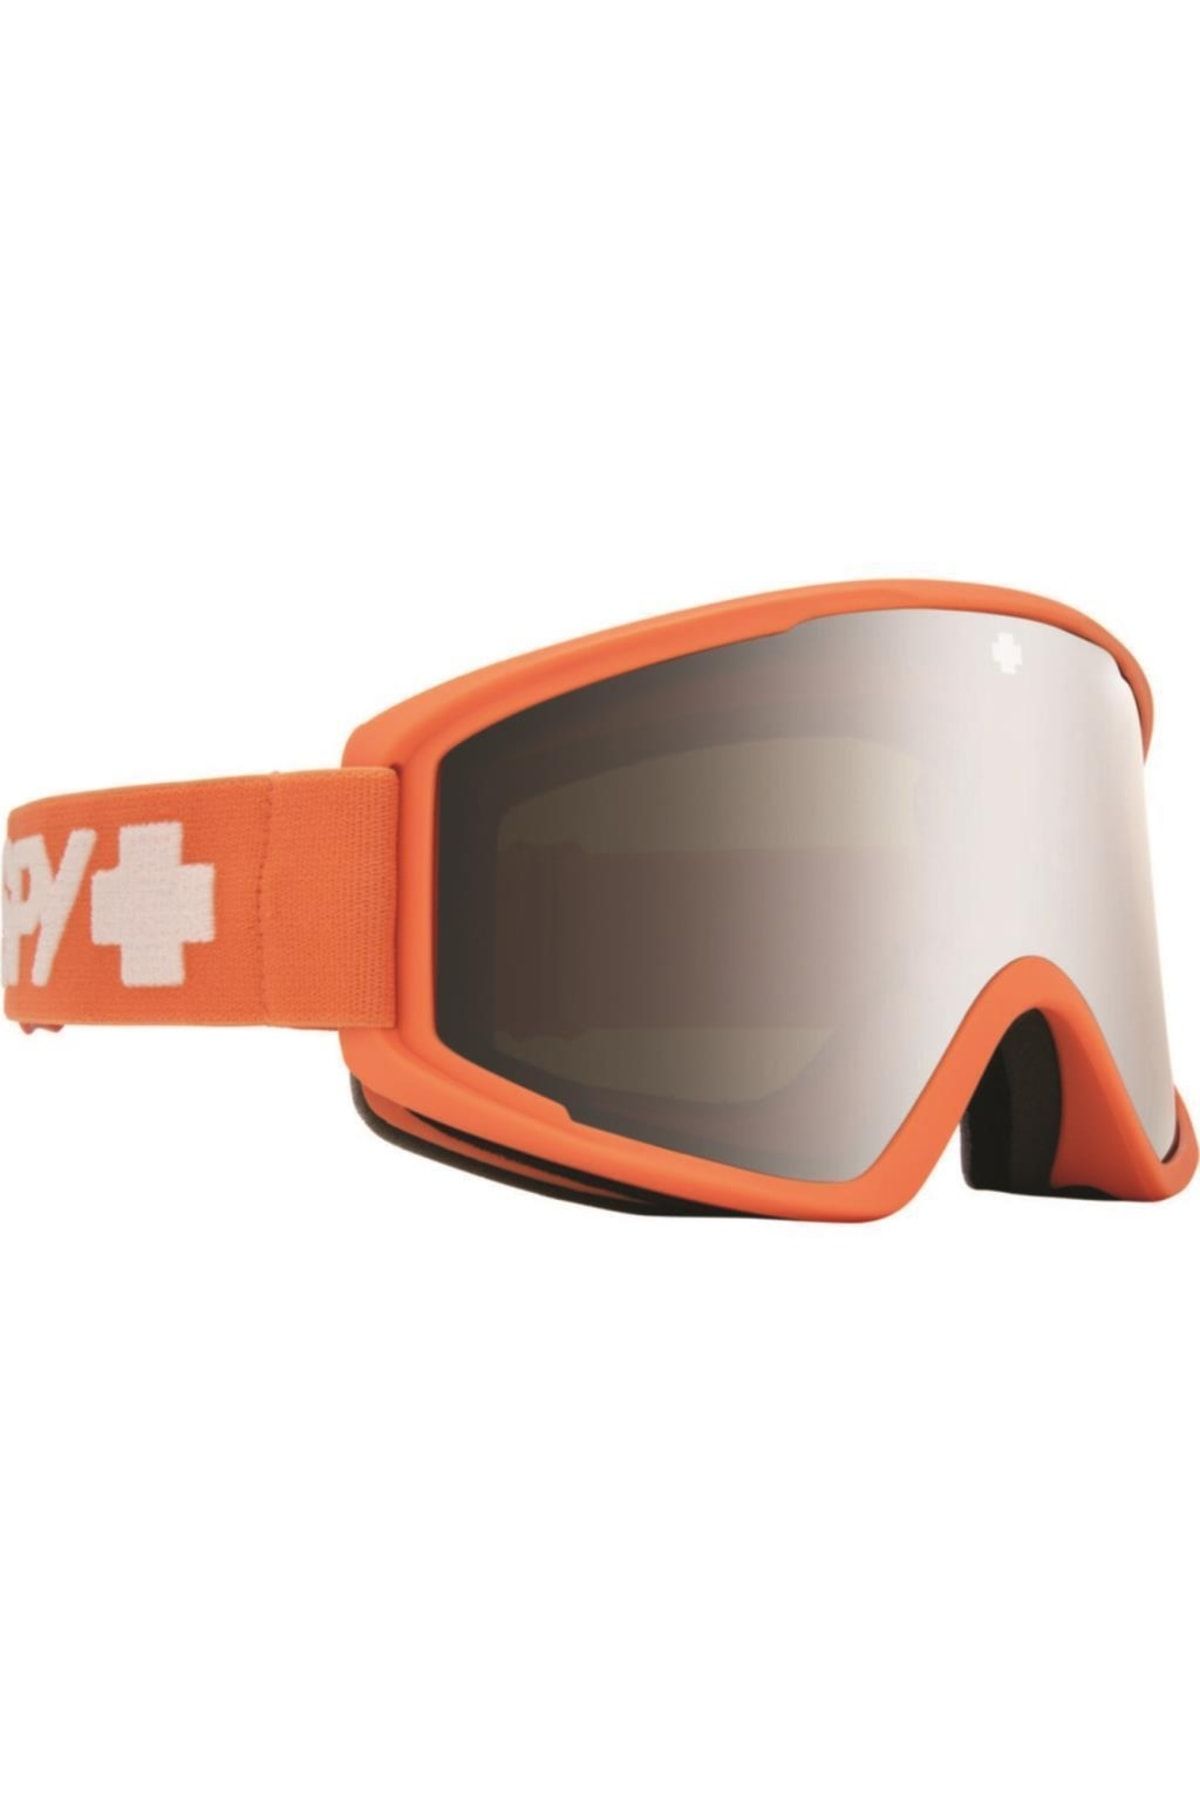 SPY Crusher Elite Kayak Gözlüğü S1 3100178